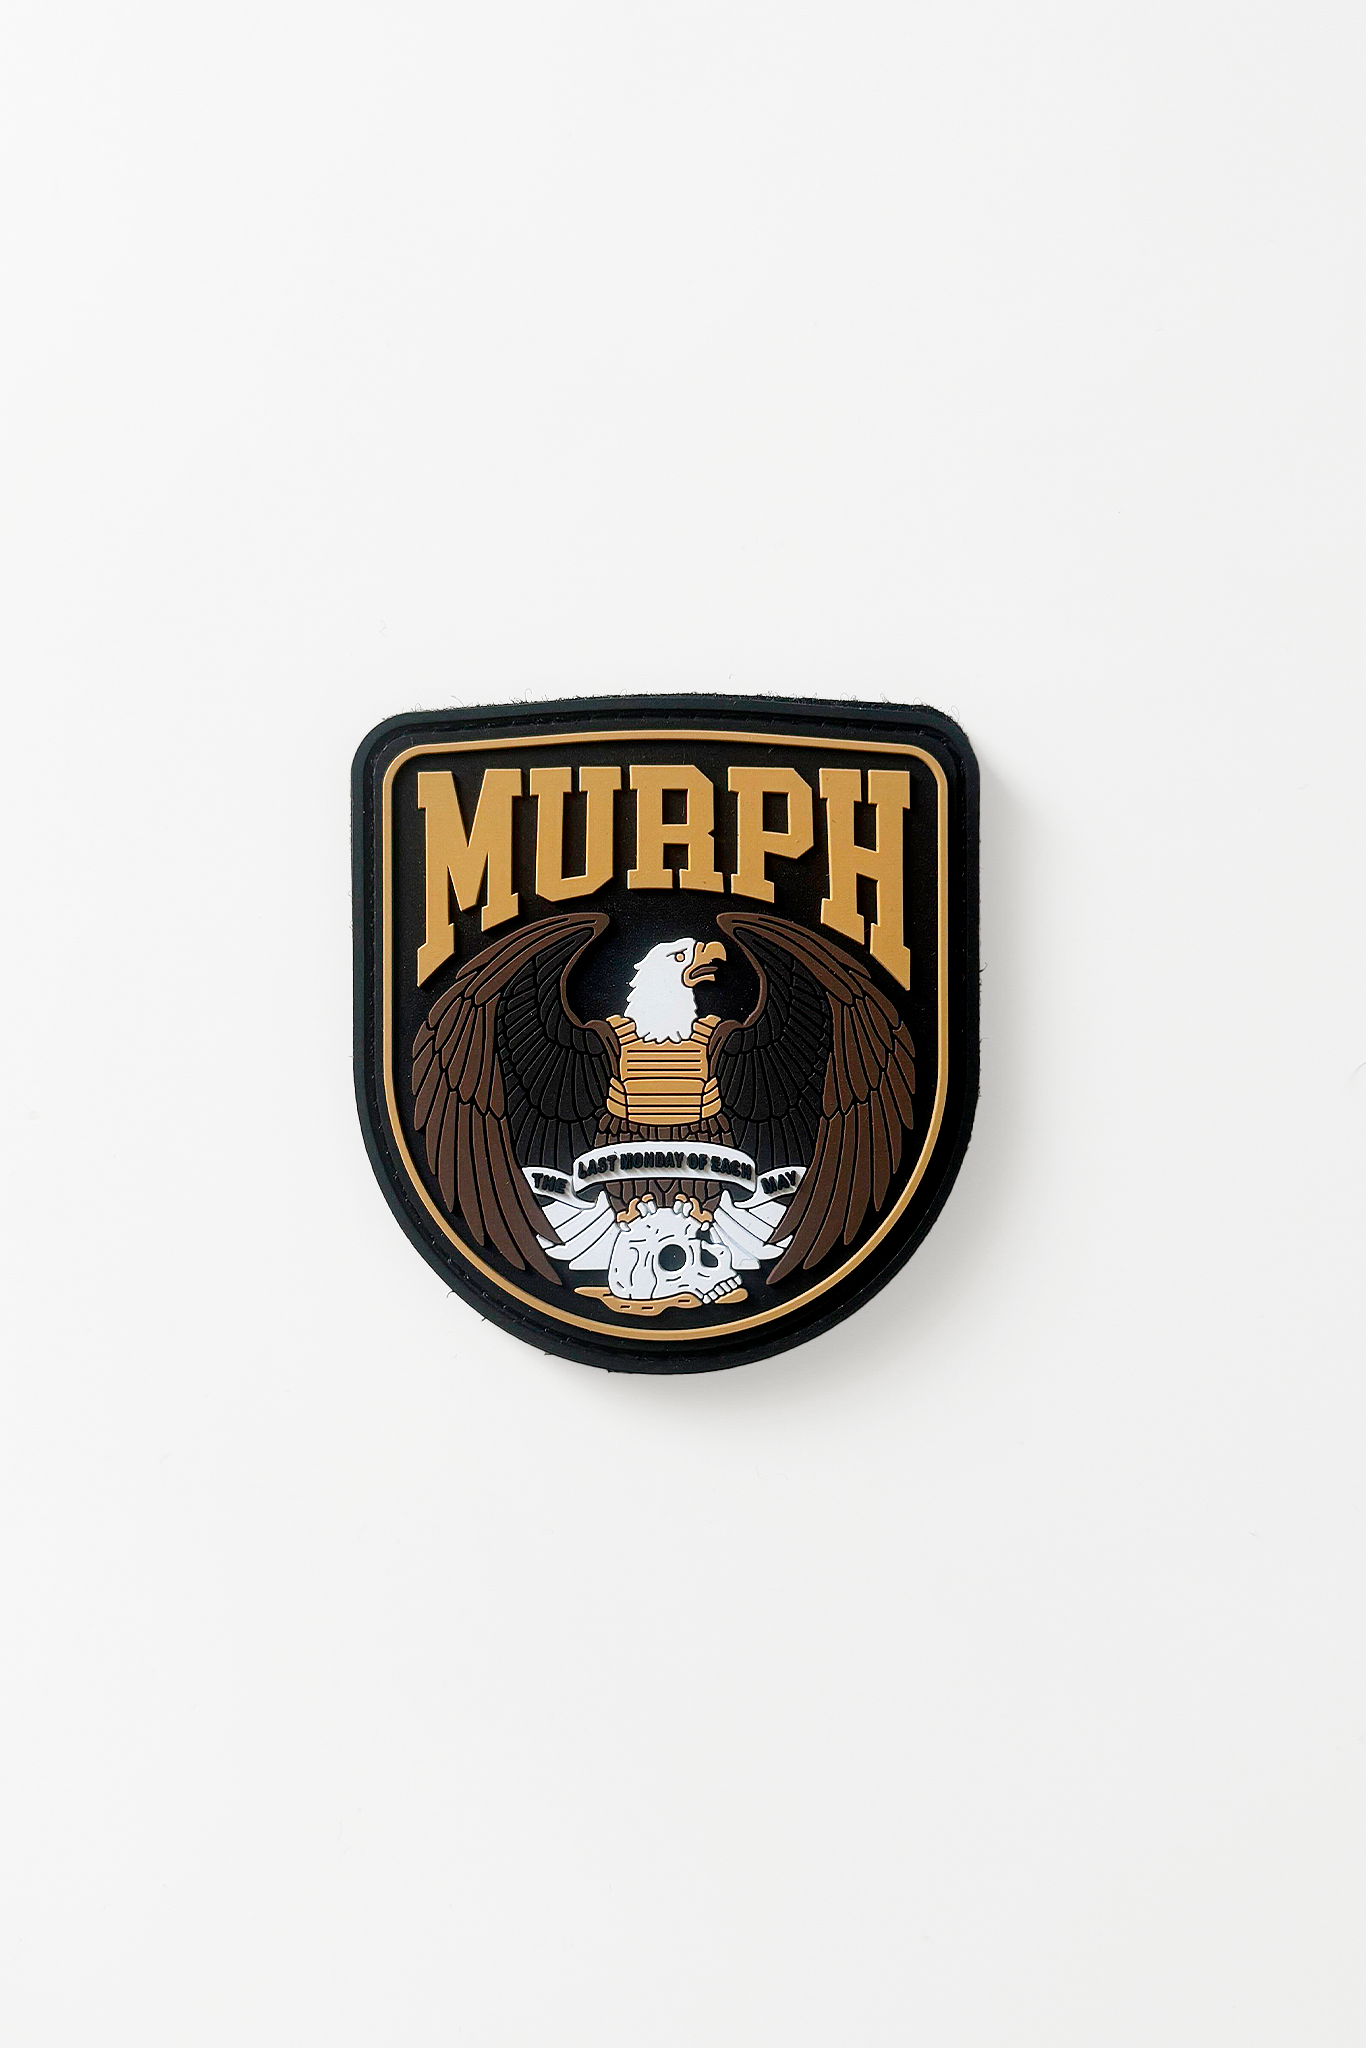 Murph Day Ed. 2024 - Velcro Patch